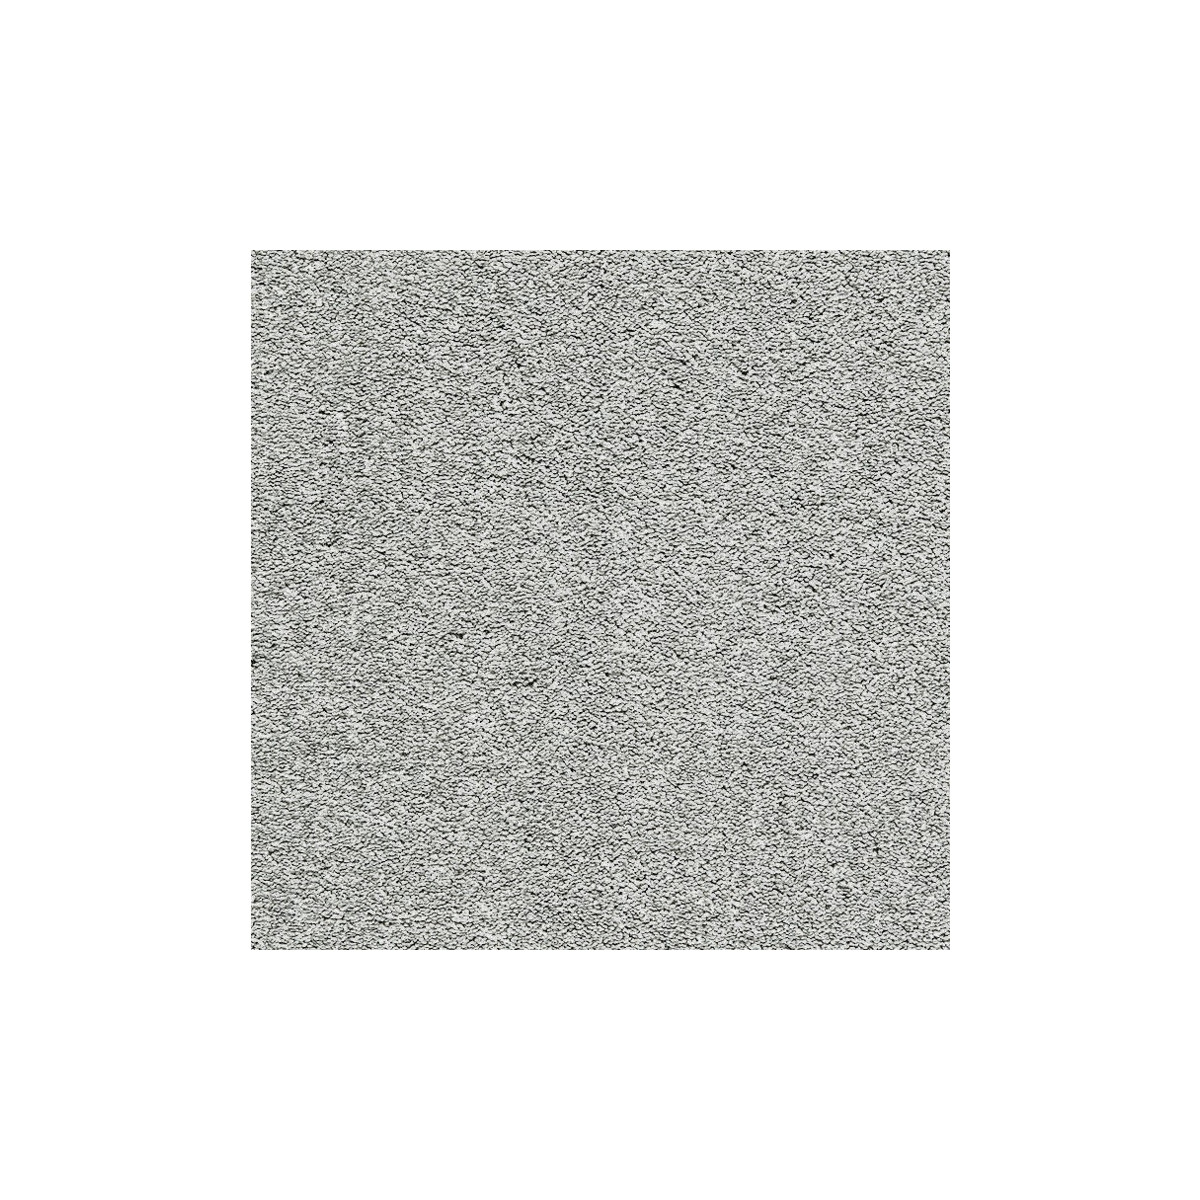 Metrážový koberec Platino 7938